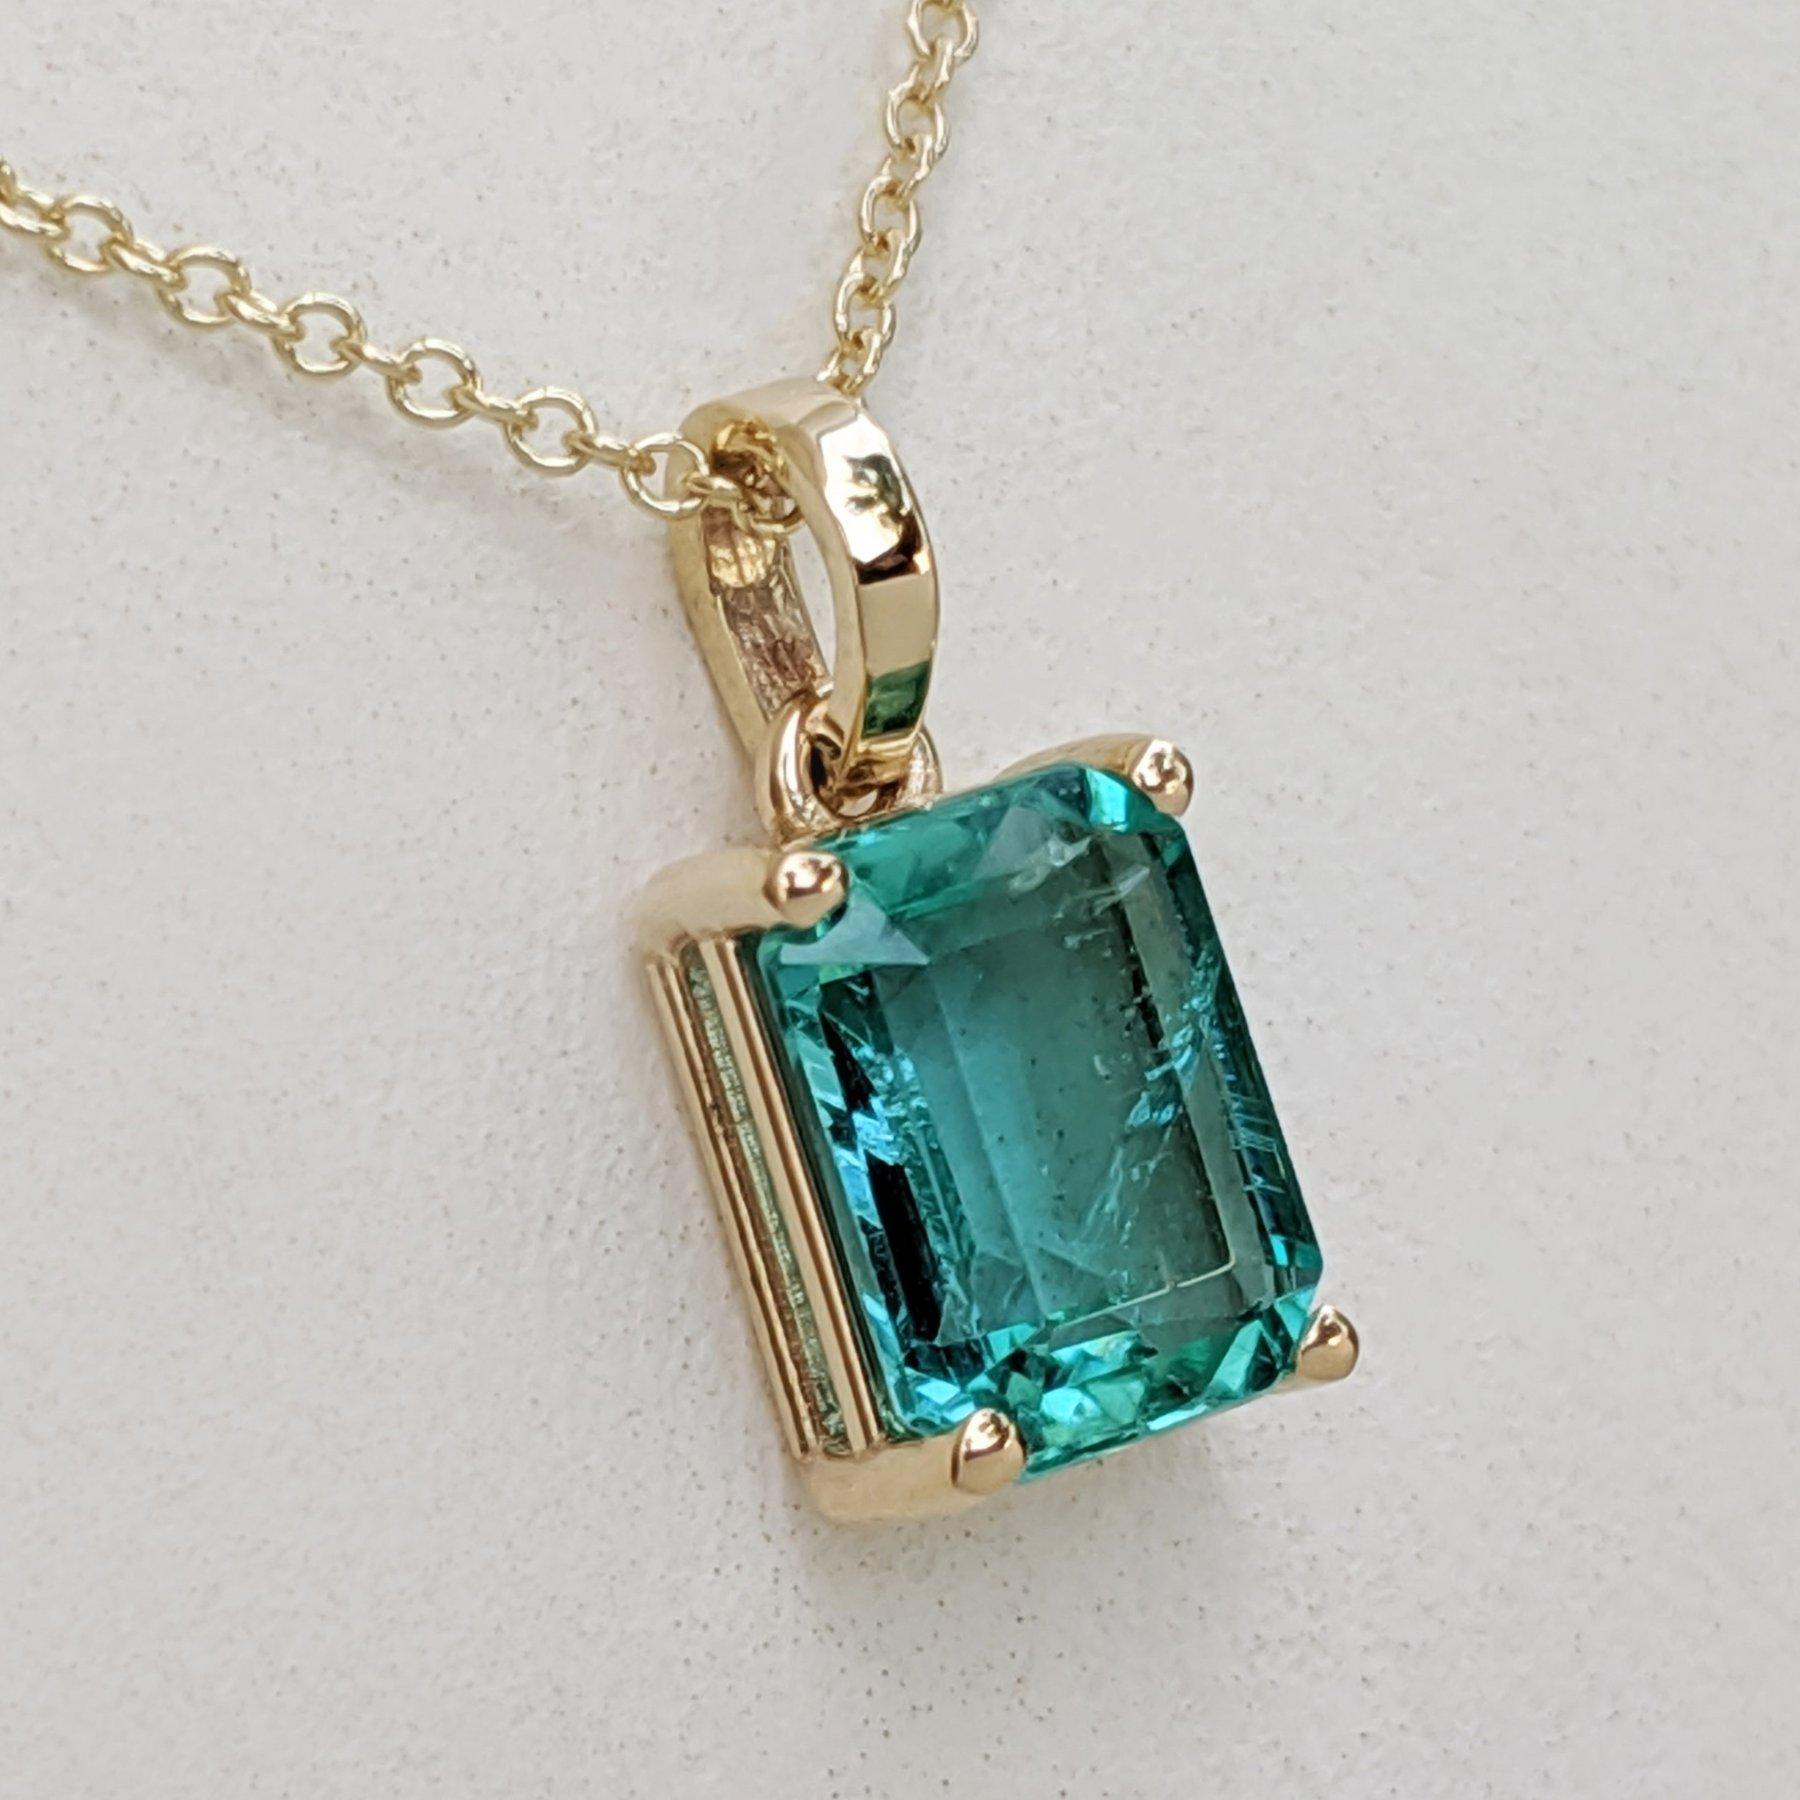 Art Deco NO RESERVE! 1.44 Carat Emerald - 14 kt. Gold - Pendant Necklace For Sale